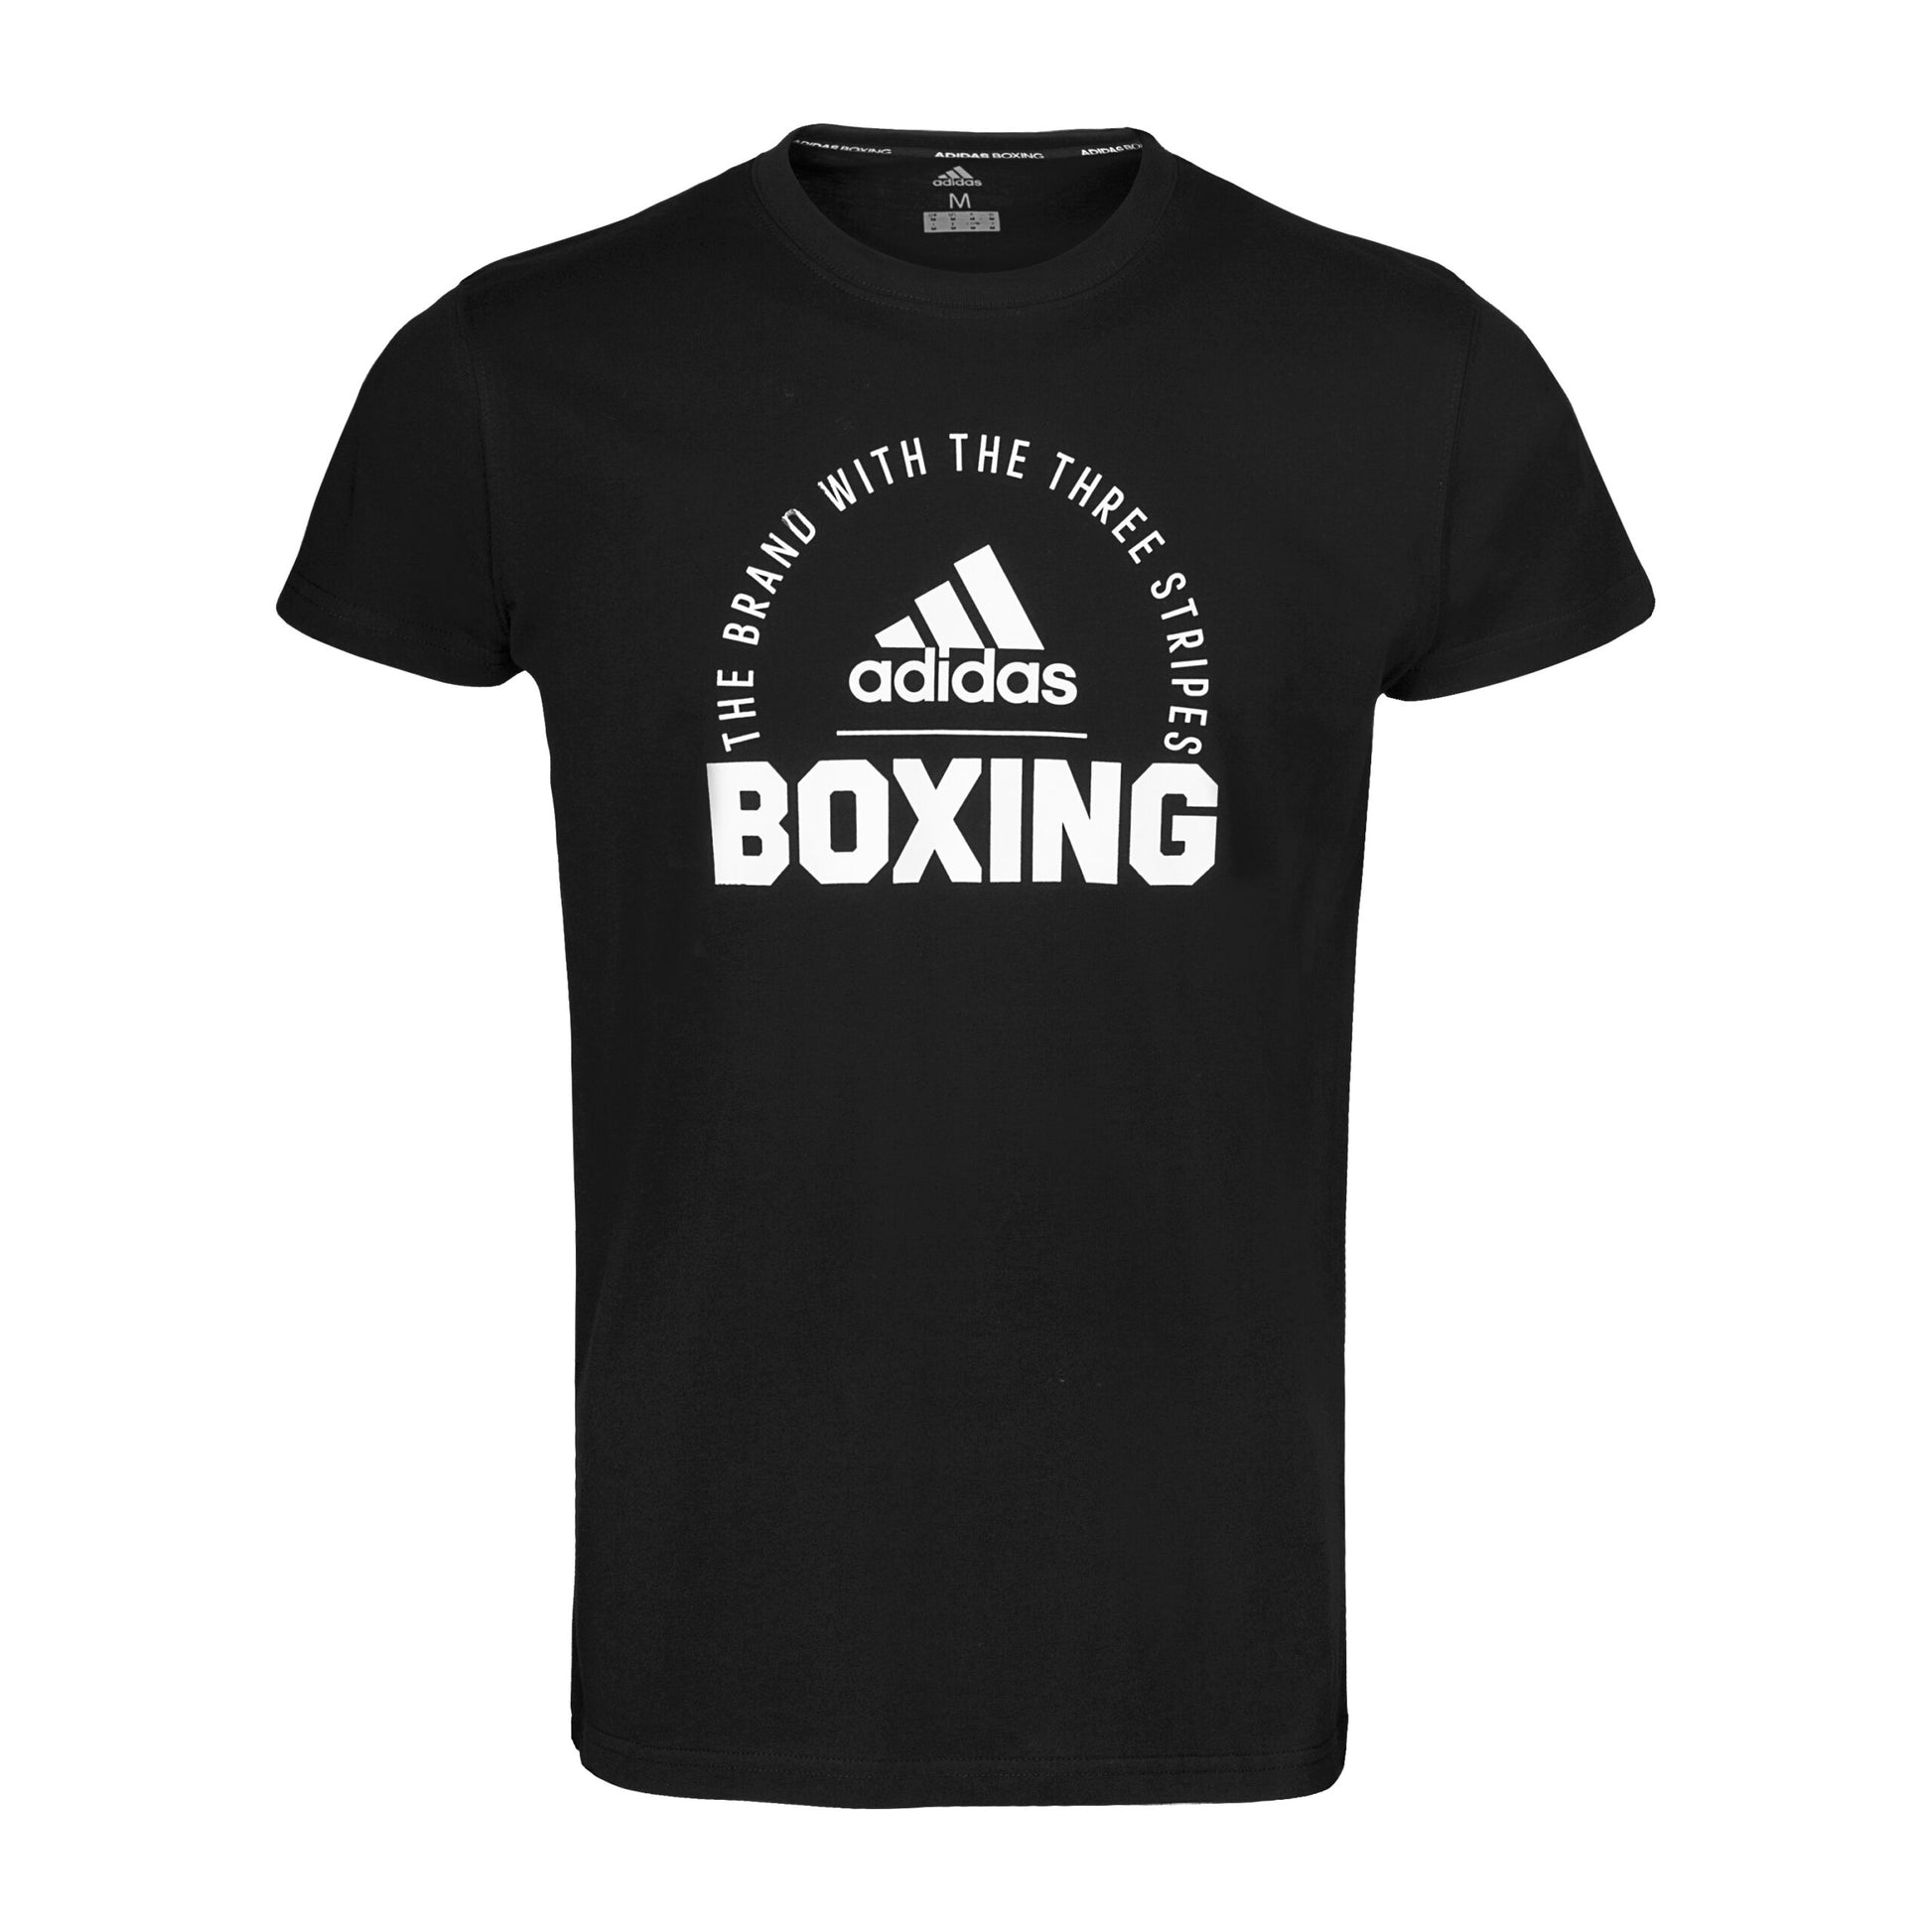 Clts21 B Adidas Boxing T Shirt Black 01